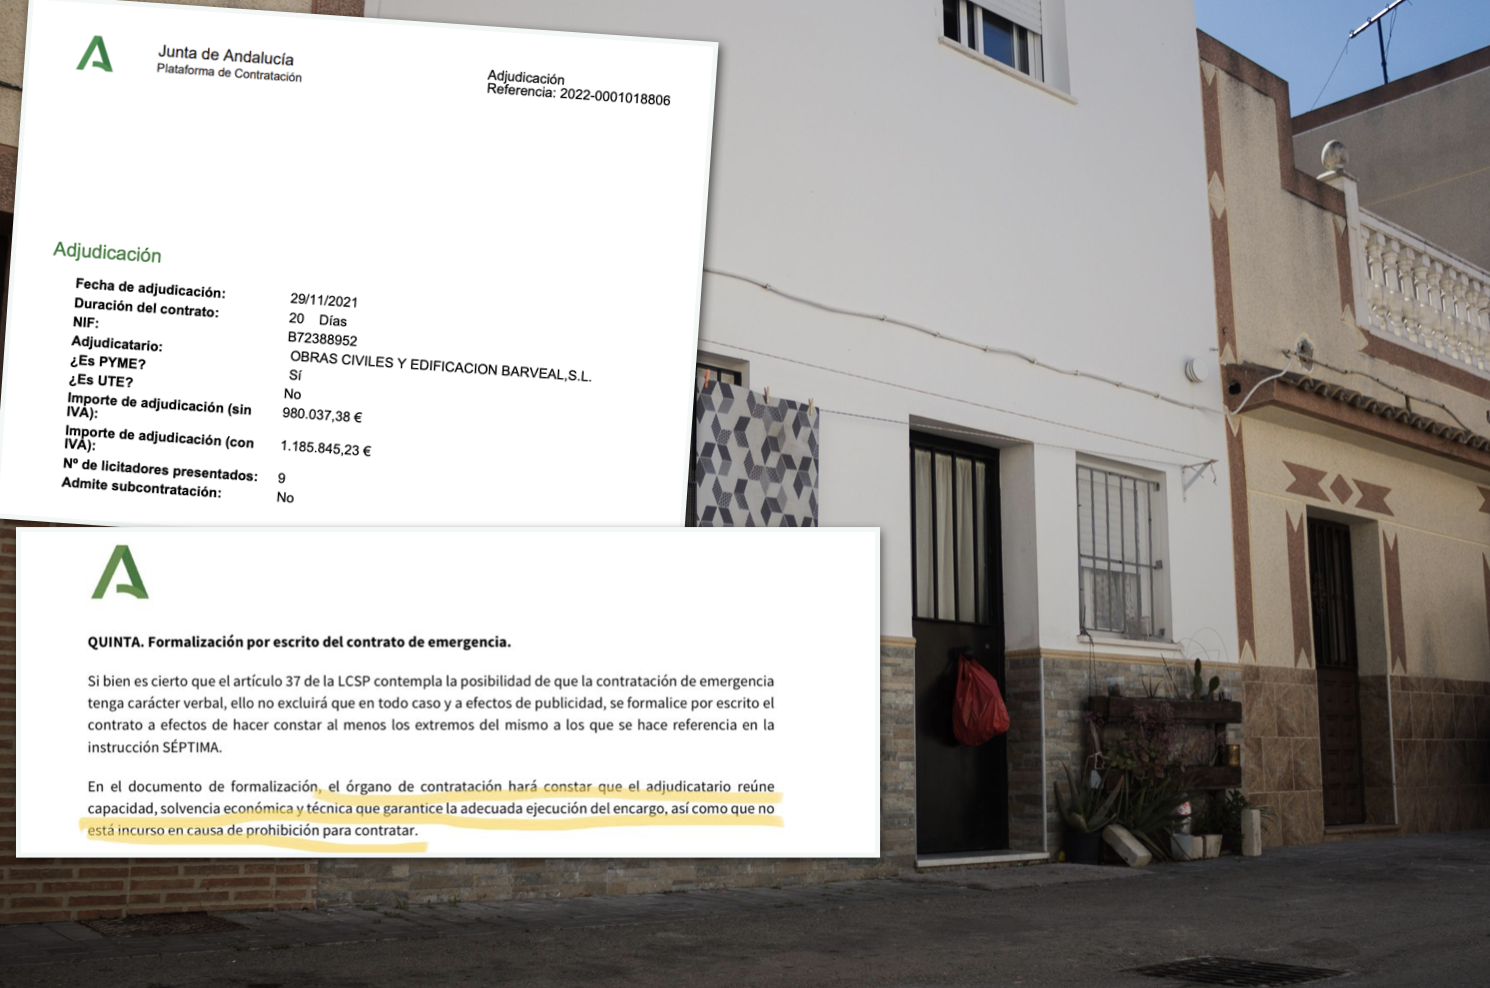 Sede social de Barveal, supuesta empresa fantasma en Guadalcacín (Jerez), y dos detalles de la adjudicación y de la instrucción de la Consejería de Hacienda de junio de 2021.